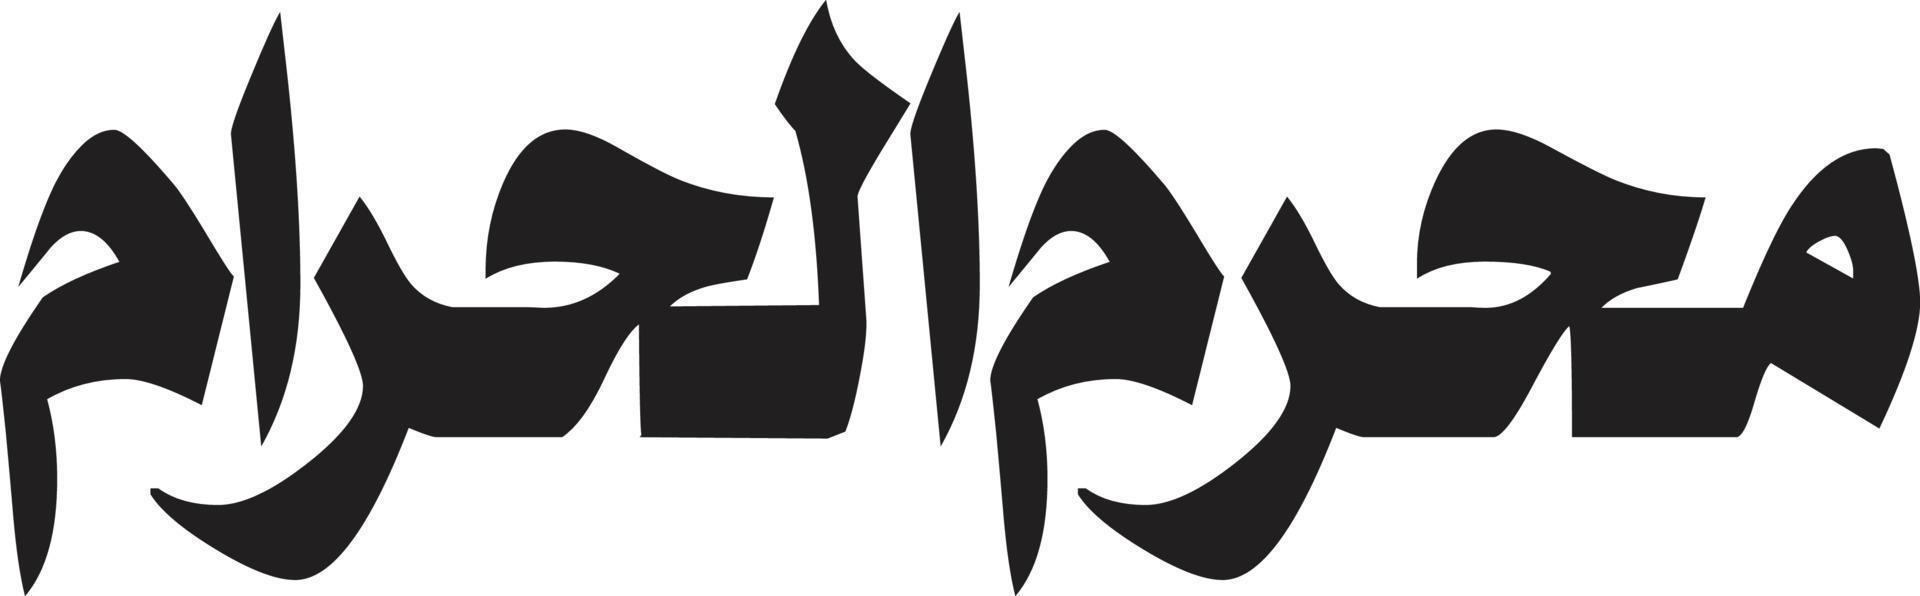 muharm al hraam titel Islamitisch Arabisch schoonschrift vrij vector